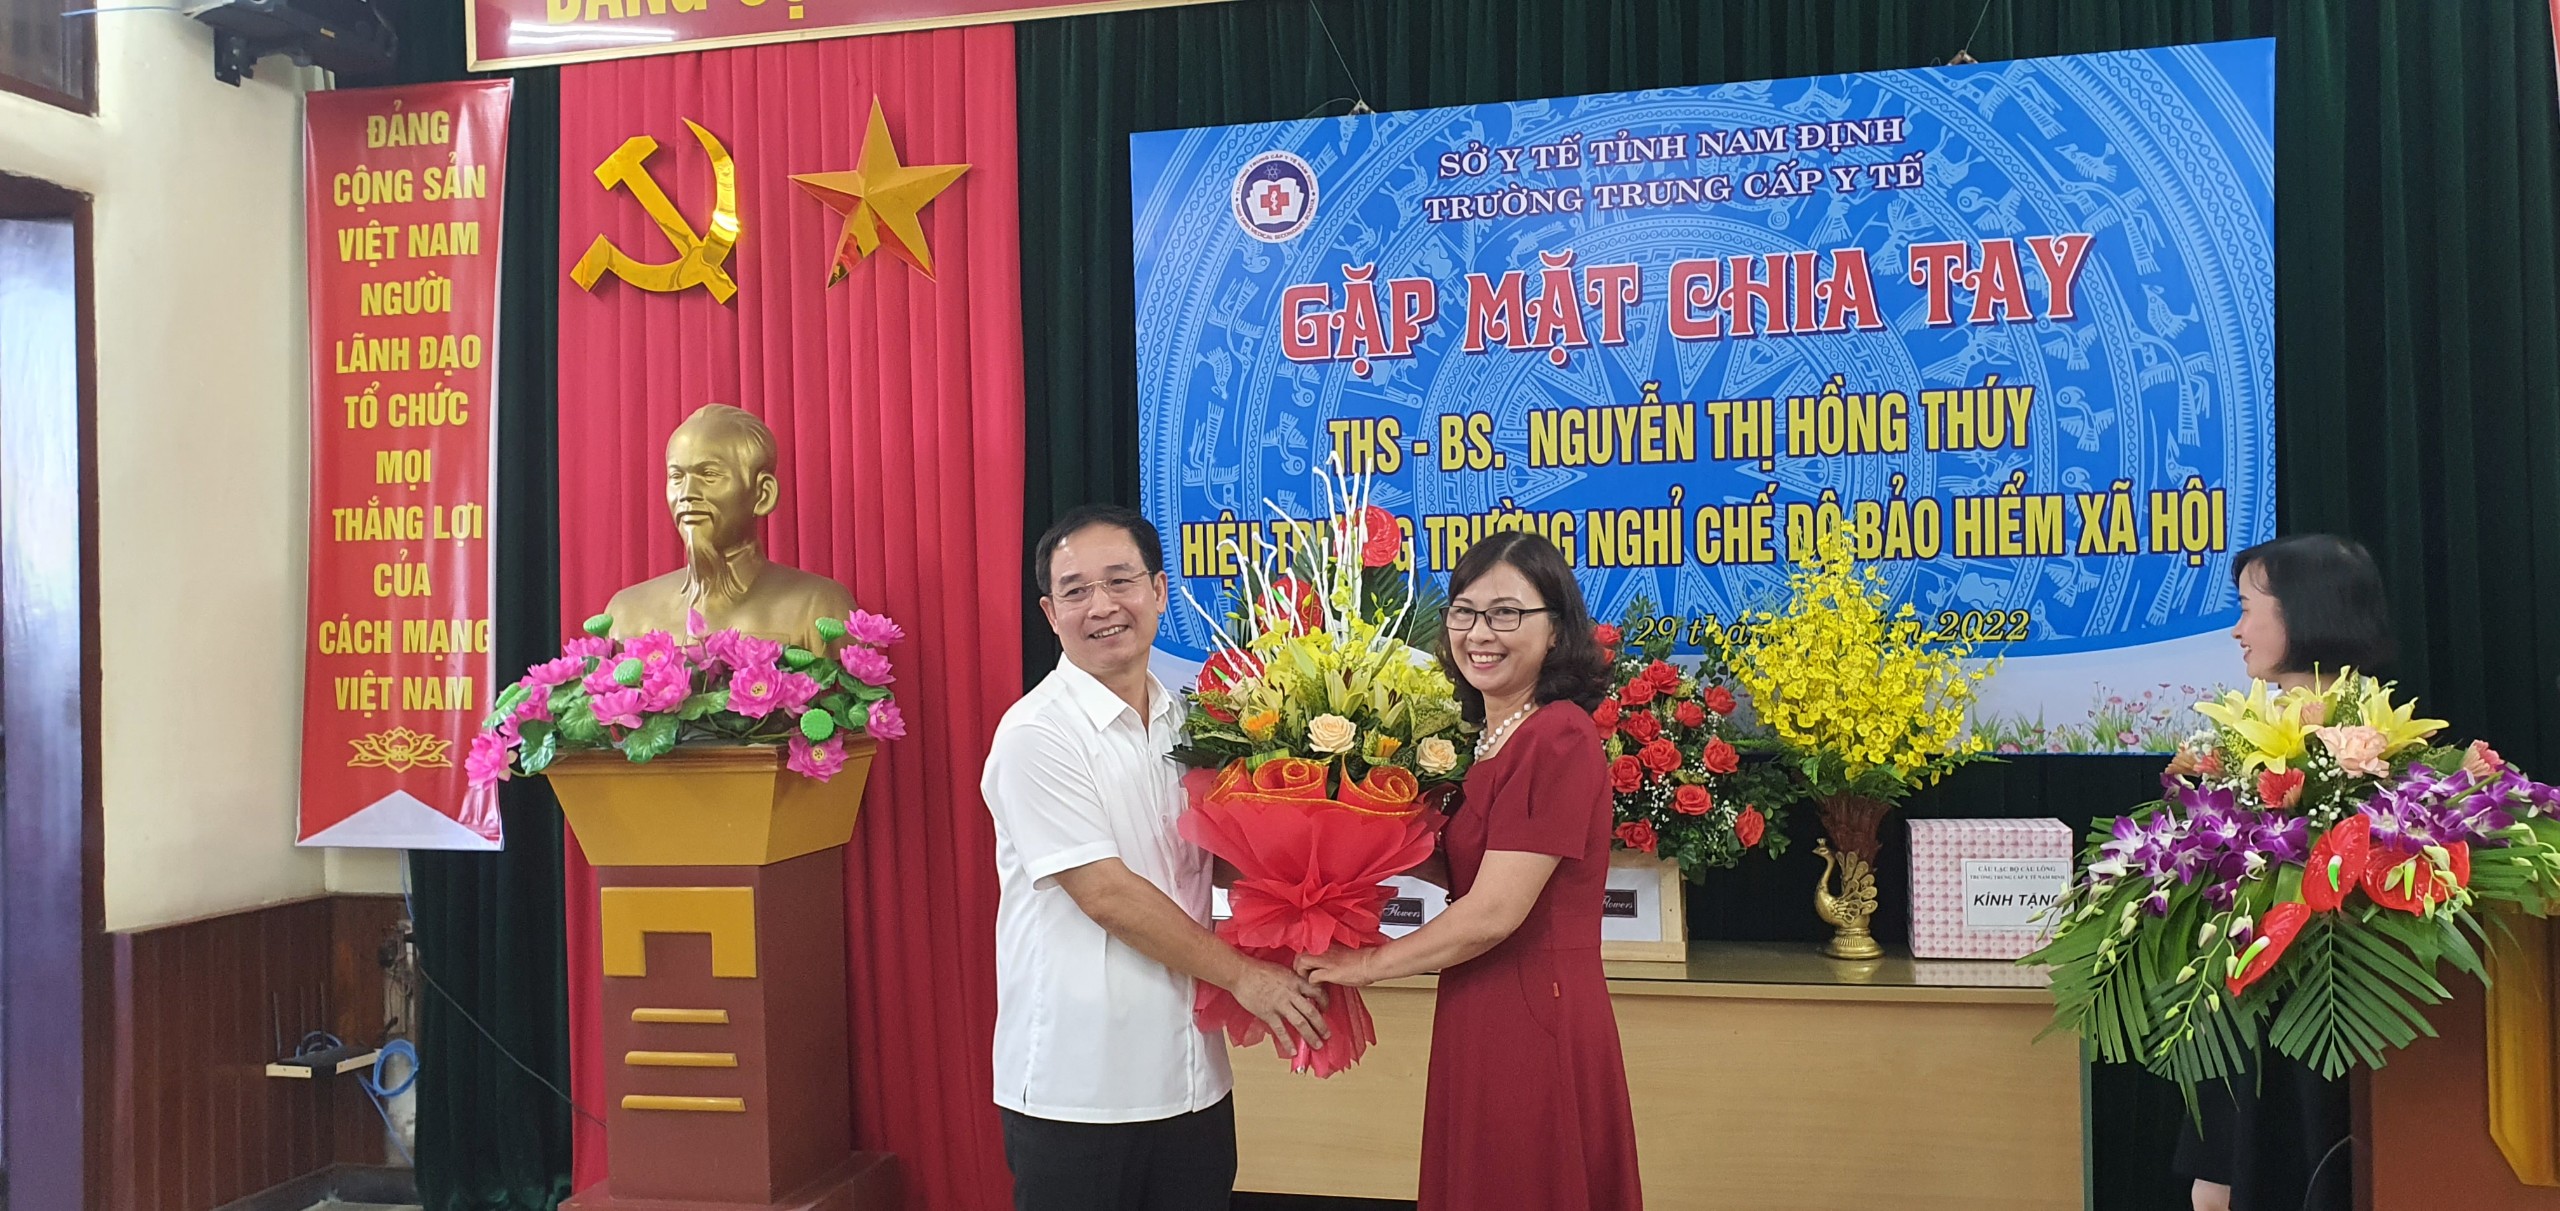 Gặp mặt chia tay Hiệu trưởng - Thạc sỹ - Bác sỹ Nguyễn Thị Hồng Thúy nghỉ chế độ bảo hiểm xã hội